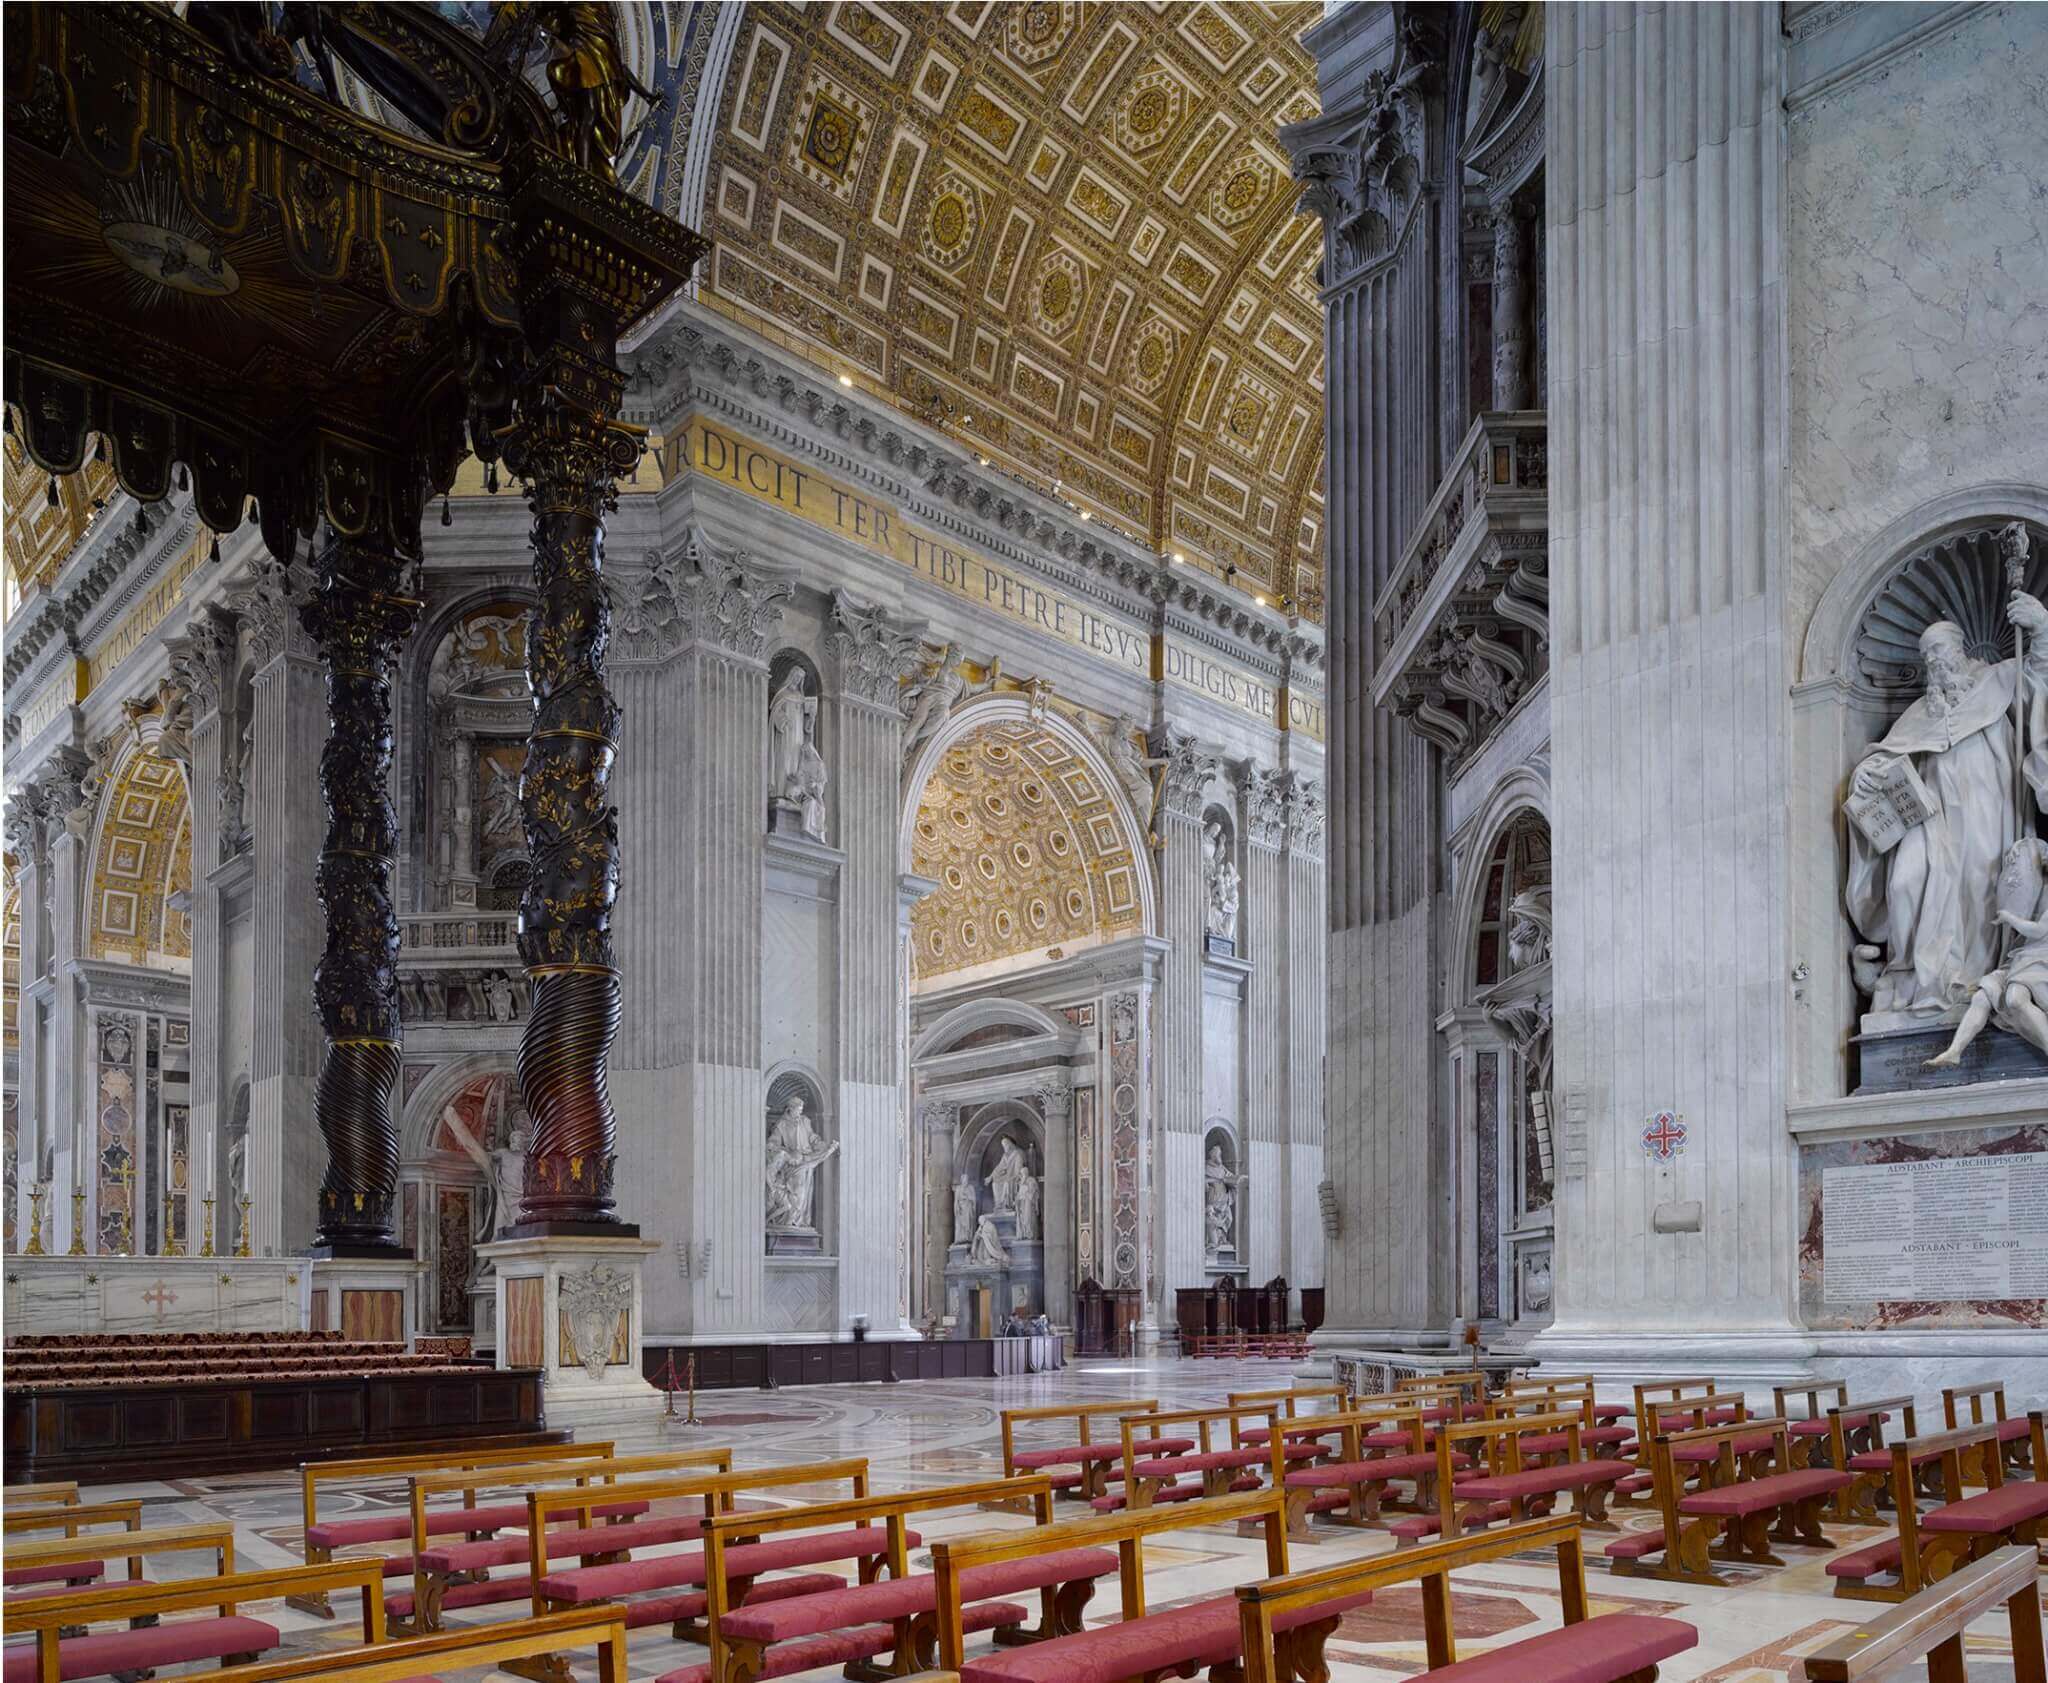 فضای داخلی کلیسای سنت پیتر با صندلی های ردیفی و سقف طلایی